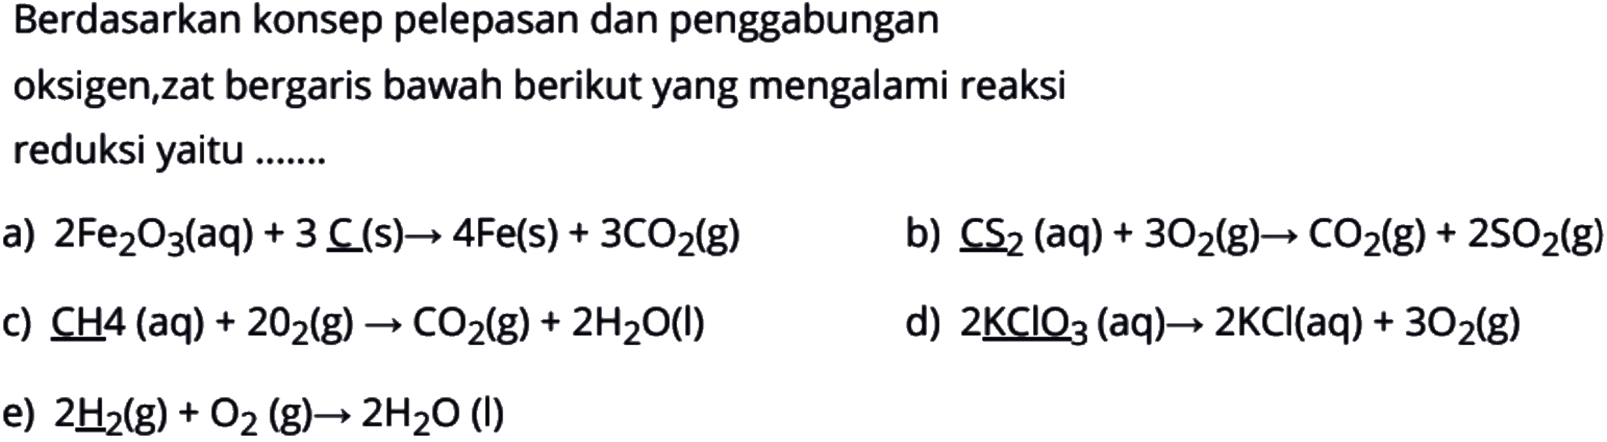 Berdasarkan konsep pelepasan dan penggabunganoksigen,zat bergaris bawah berikut yang mengalami reaksireduksi yaitu .......a)  2 Fe2 O3(aq)+3 \underlineC(s) -> 4 Fe(s)+3 CO2(g) b)  \underlineCS2(aq)+3 O2(g) -> CO2(g)+2 SO2(g) c)  CH 4(aq)+2 O2(g) -> CO2(g)+2 H2 O(l) d)  2 \underlineKClO3(aq) -> 2 KCl(aq)+3 O2(g) e)  2 \underlineH2(g)+O2(g) -> 2 H2 O(l) 